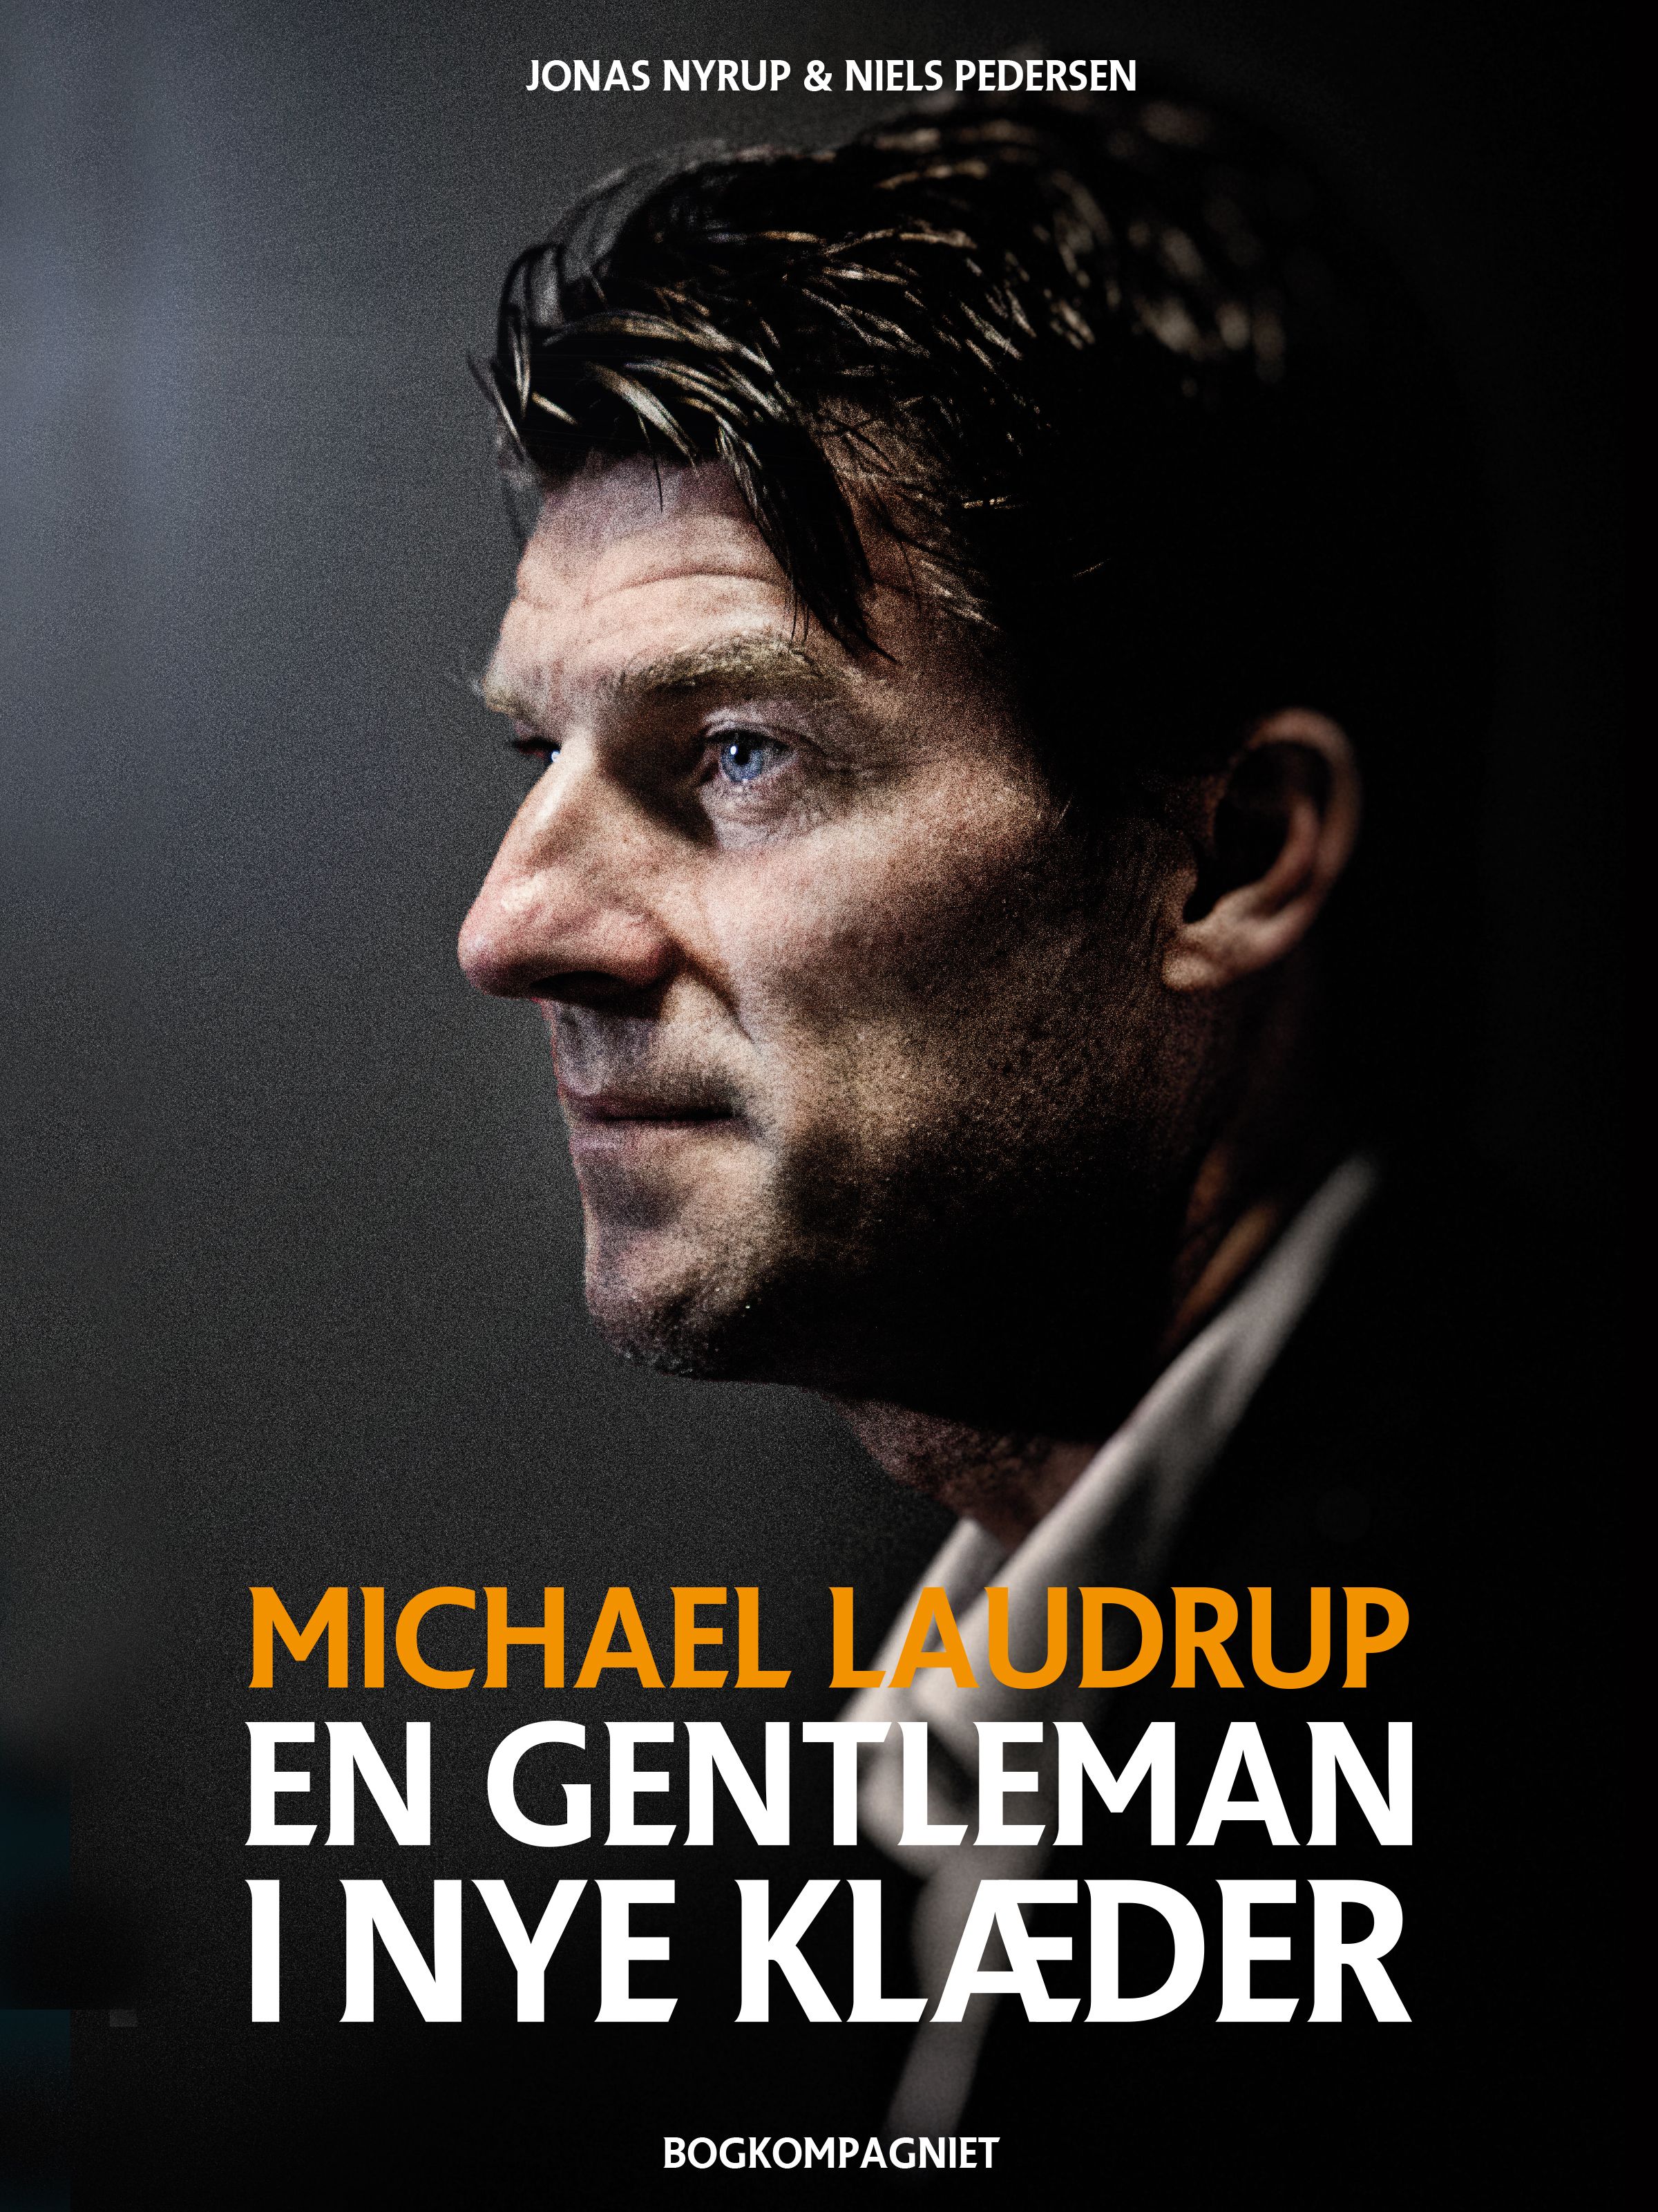 Michael Laudrup - en gentleman i nye klæder, e-bog af Jonas Nyrup, Niels Pedersen